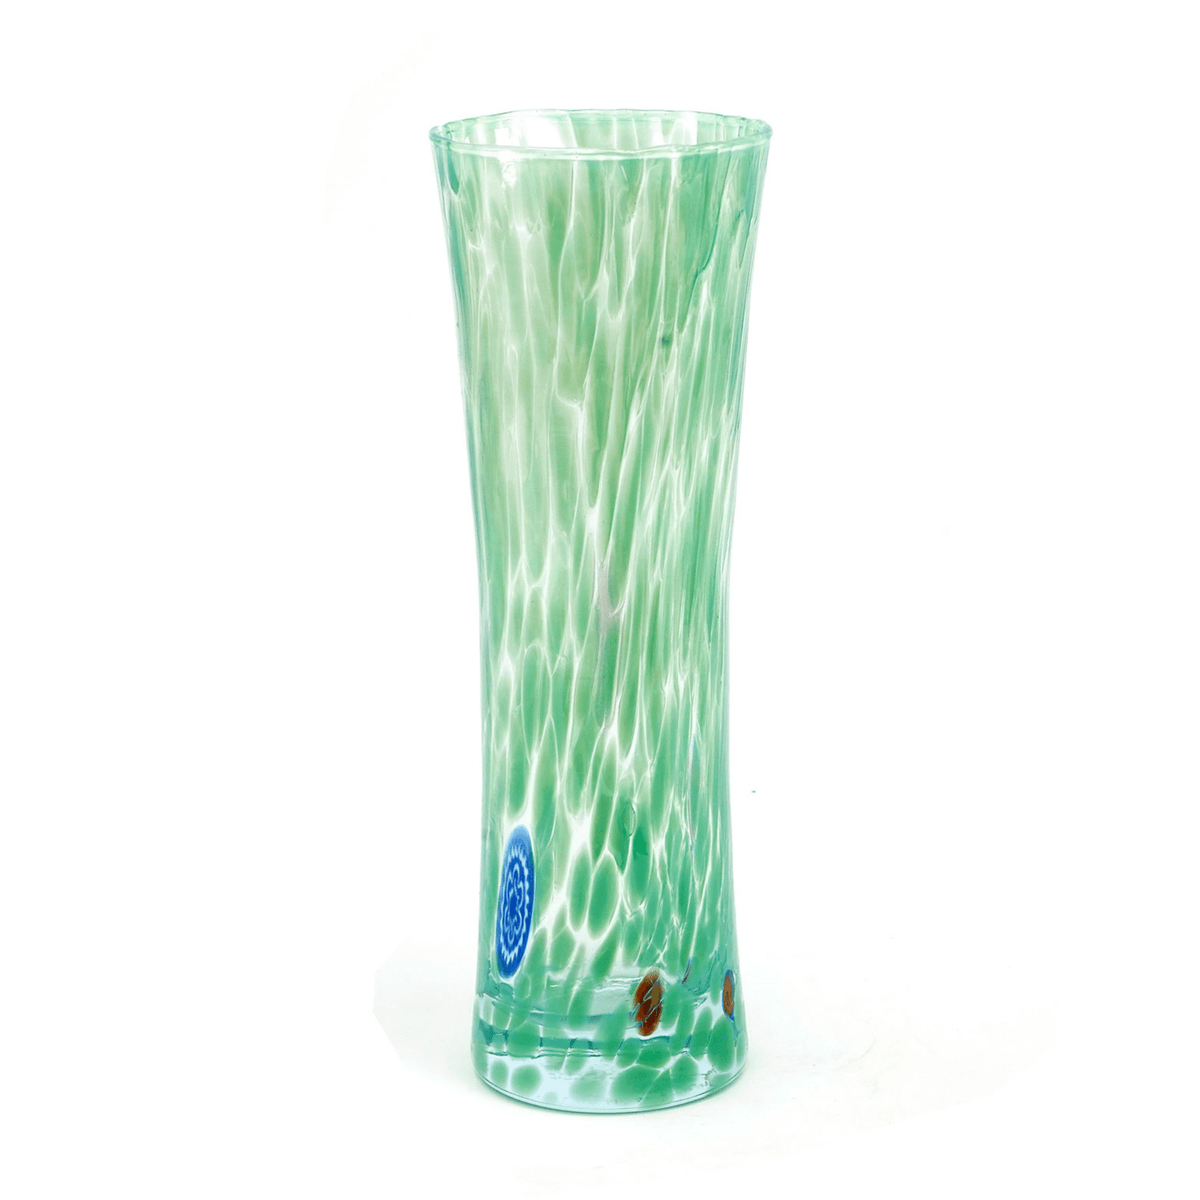 Murano Glass Bud Vase, Contemporary, Made in Italy at MyItalianDecor